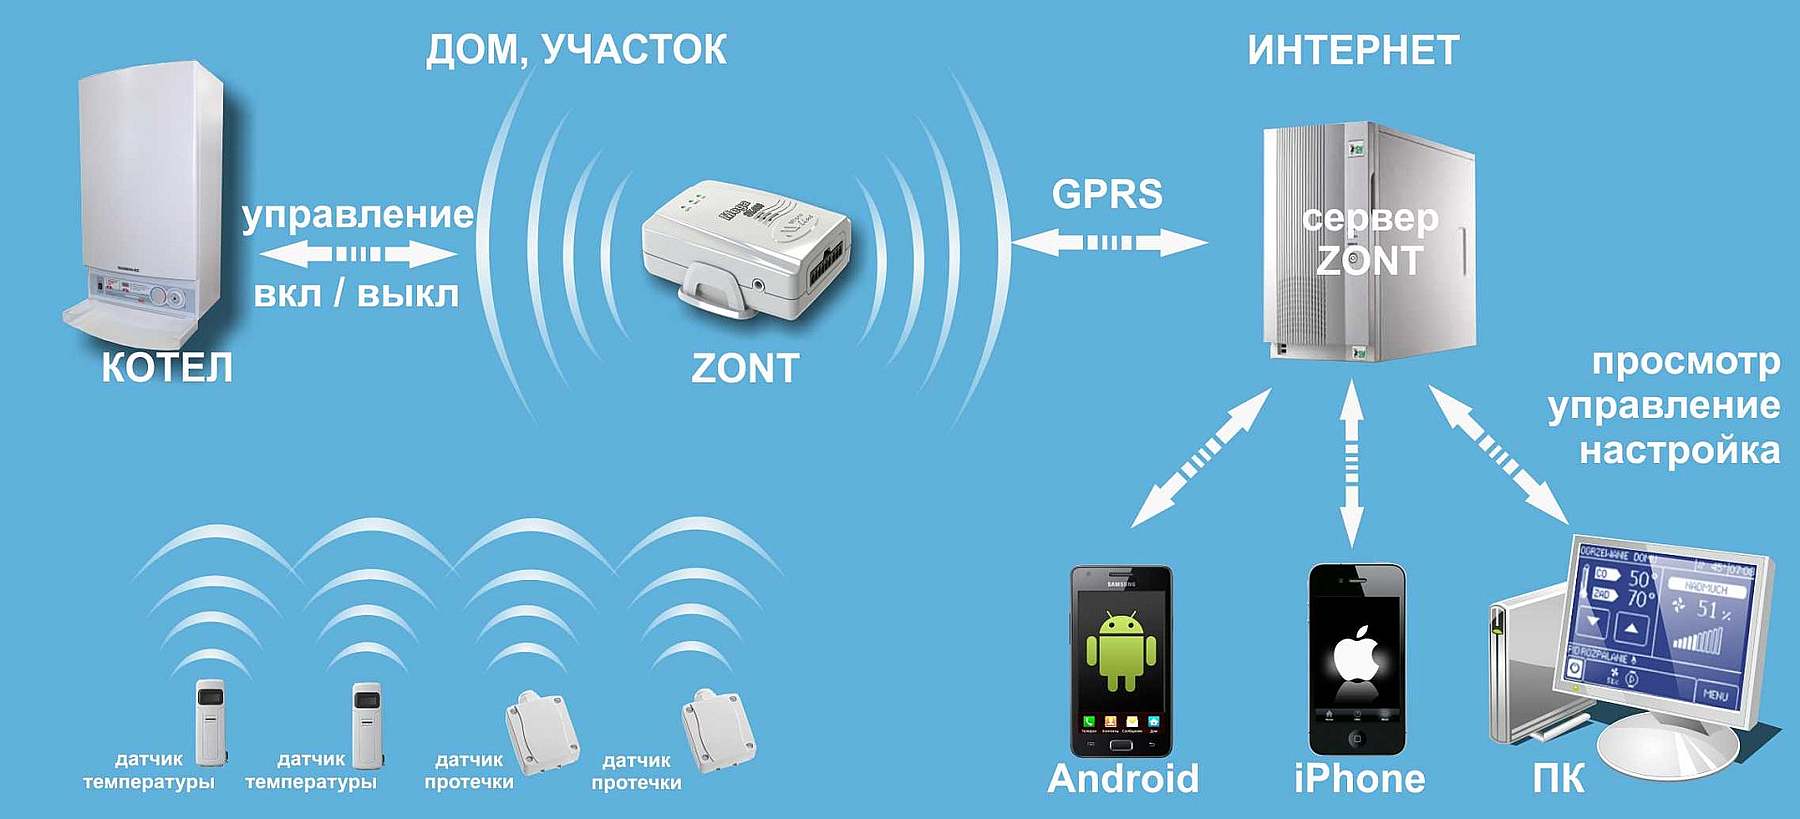 Zont wifi. WIFI-climate Zont-h2. Система удаленного управления котлом Zont-h1b ( +комплект с датчиками ). GSM WIFI управлением газовым котлом. Управление котельной через Wi-Fi Zont.